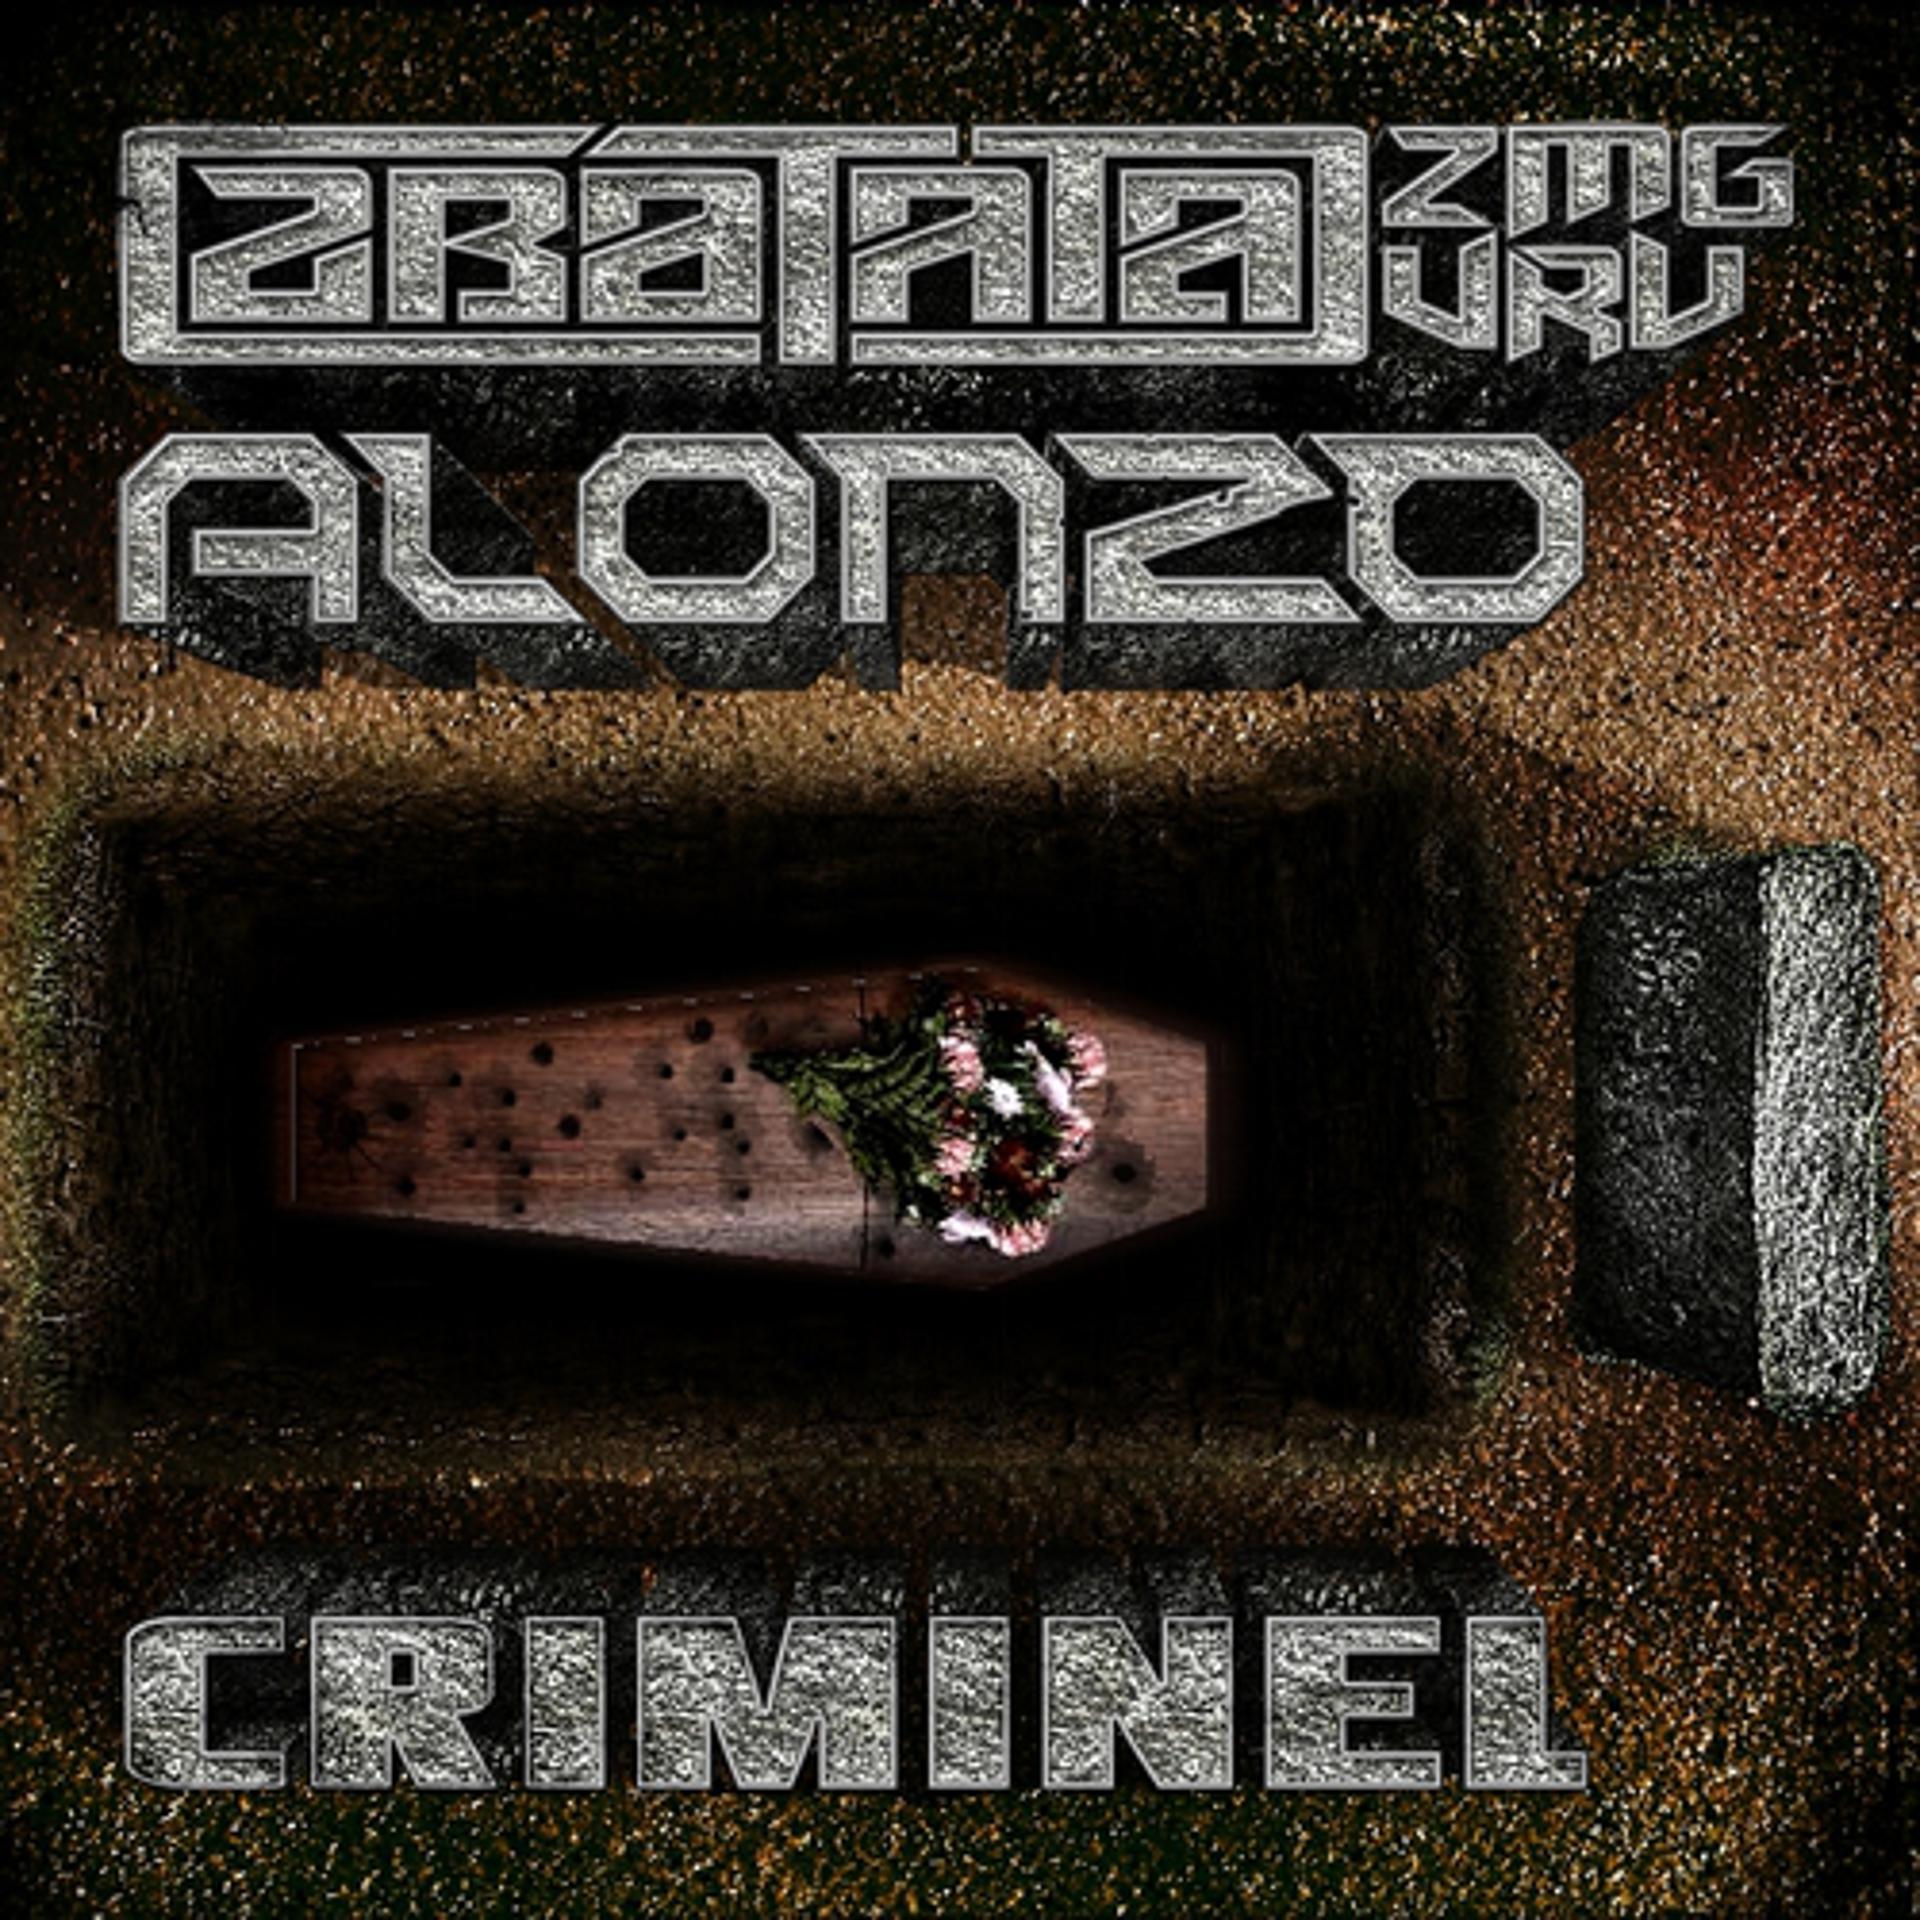 Постер альбома Criminel